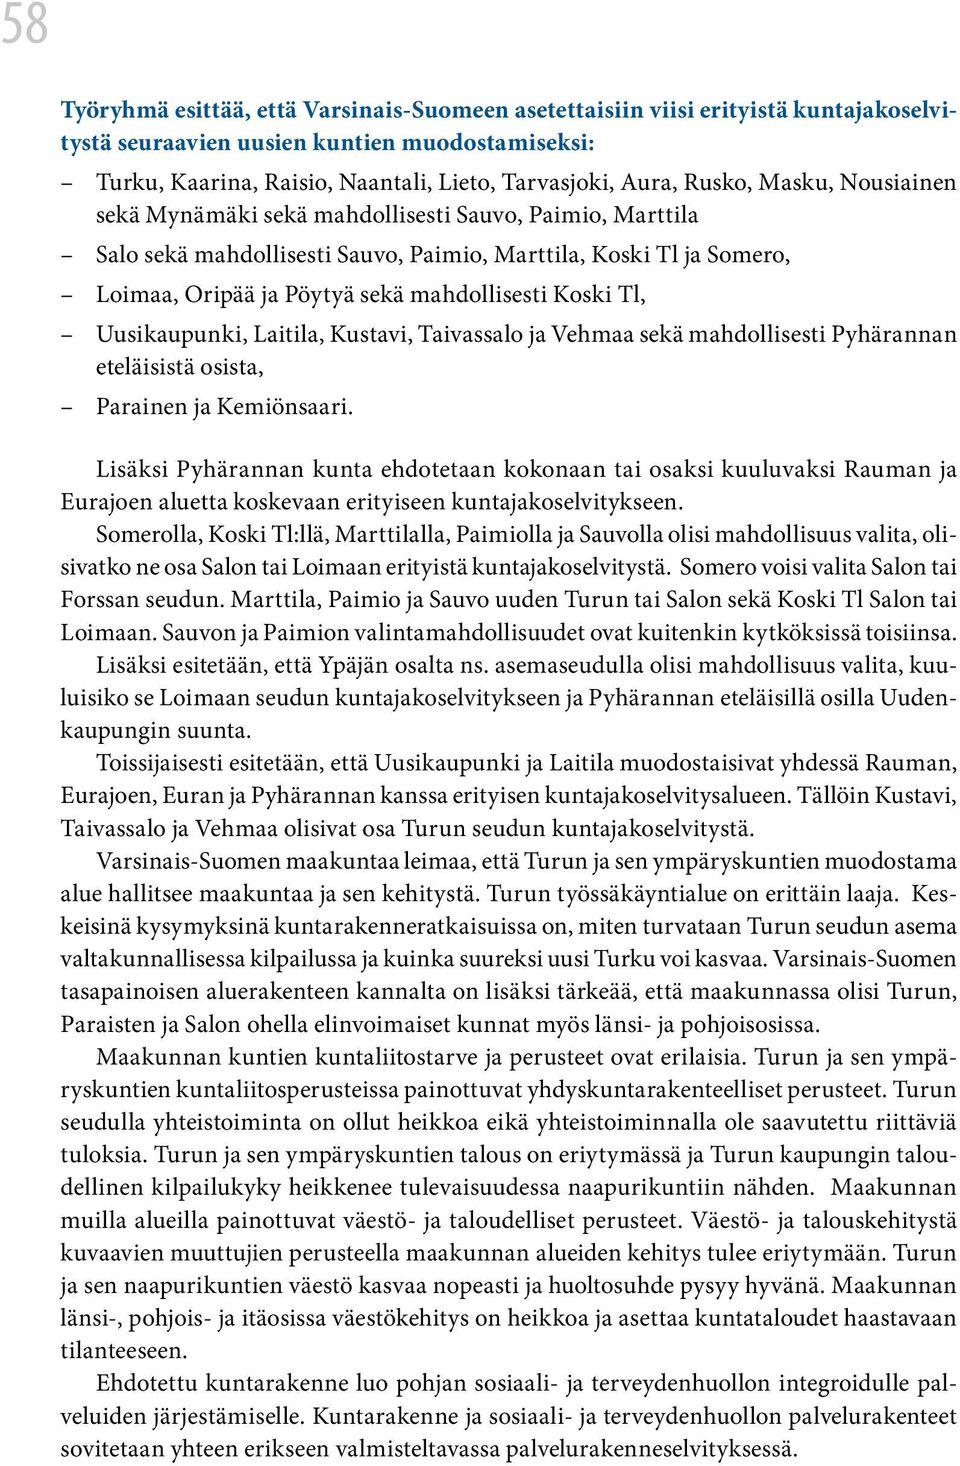 Koski Tl, Uusikaupunki, Laitila, Kustavi, Taivassalo ja Vehmaa sekä mahdollisesti Pyhärannan eteläisistä osista, Parainen ja Kemiönsaari.